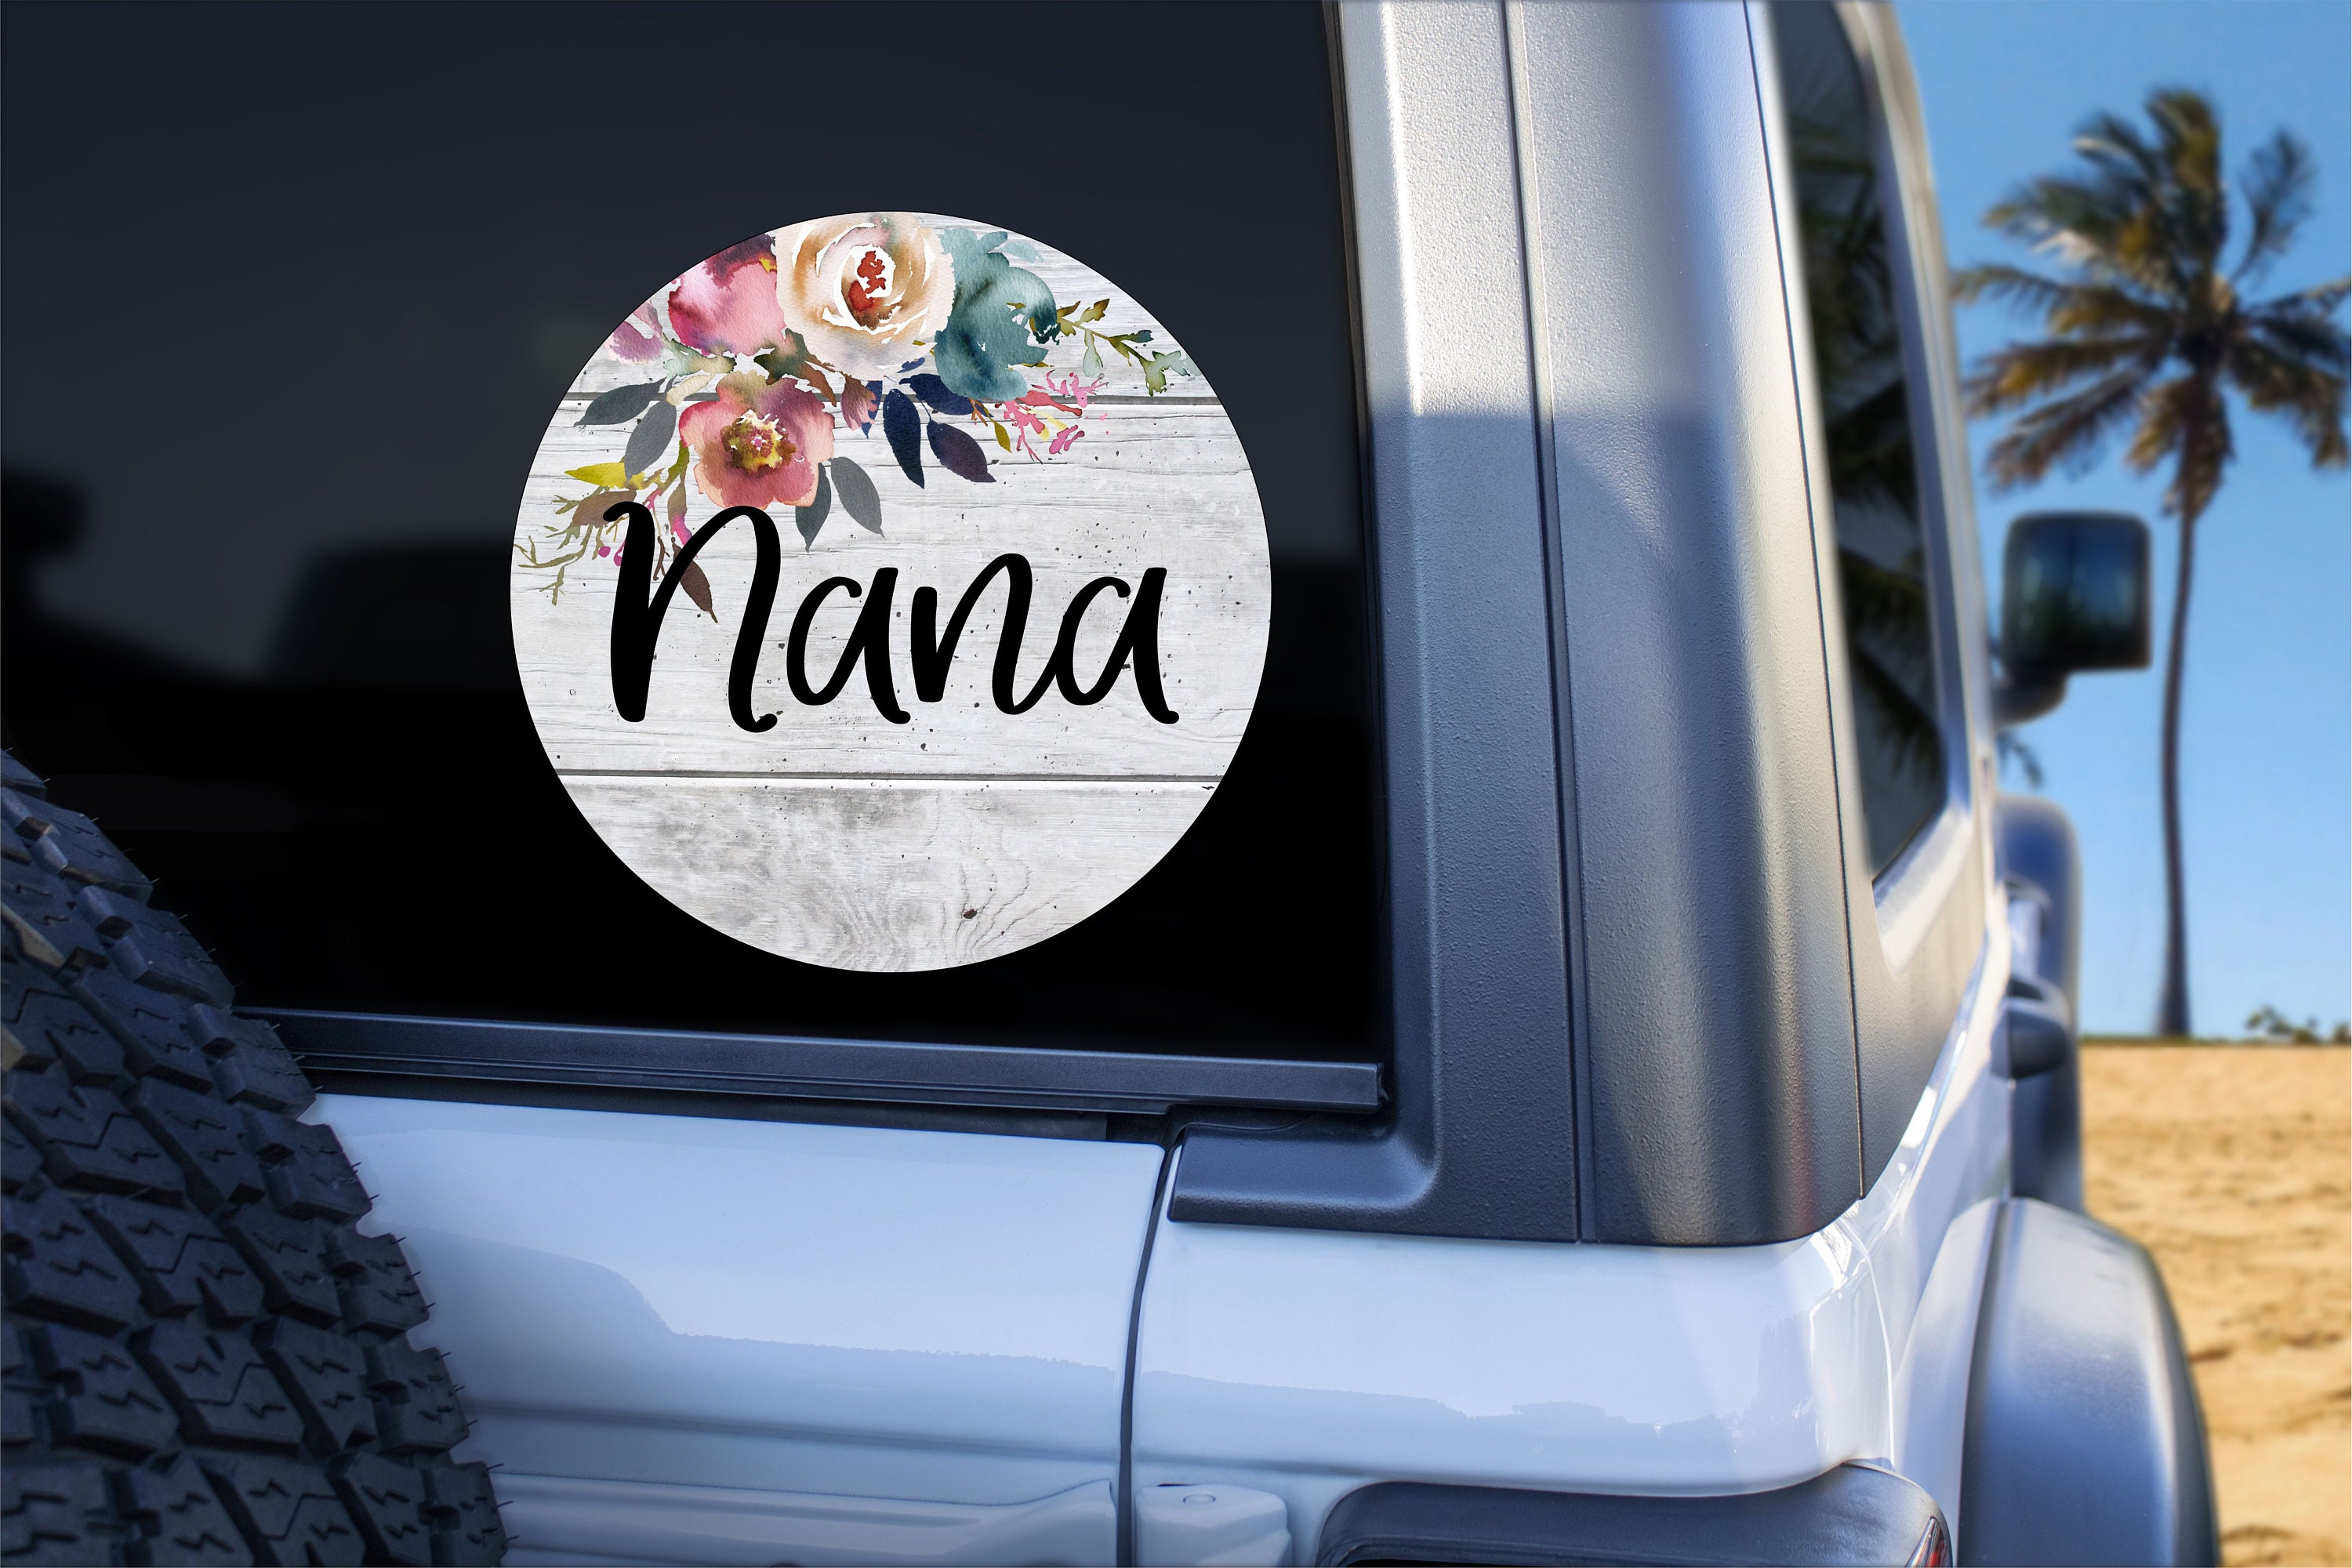 Nana Anime Car 